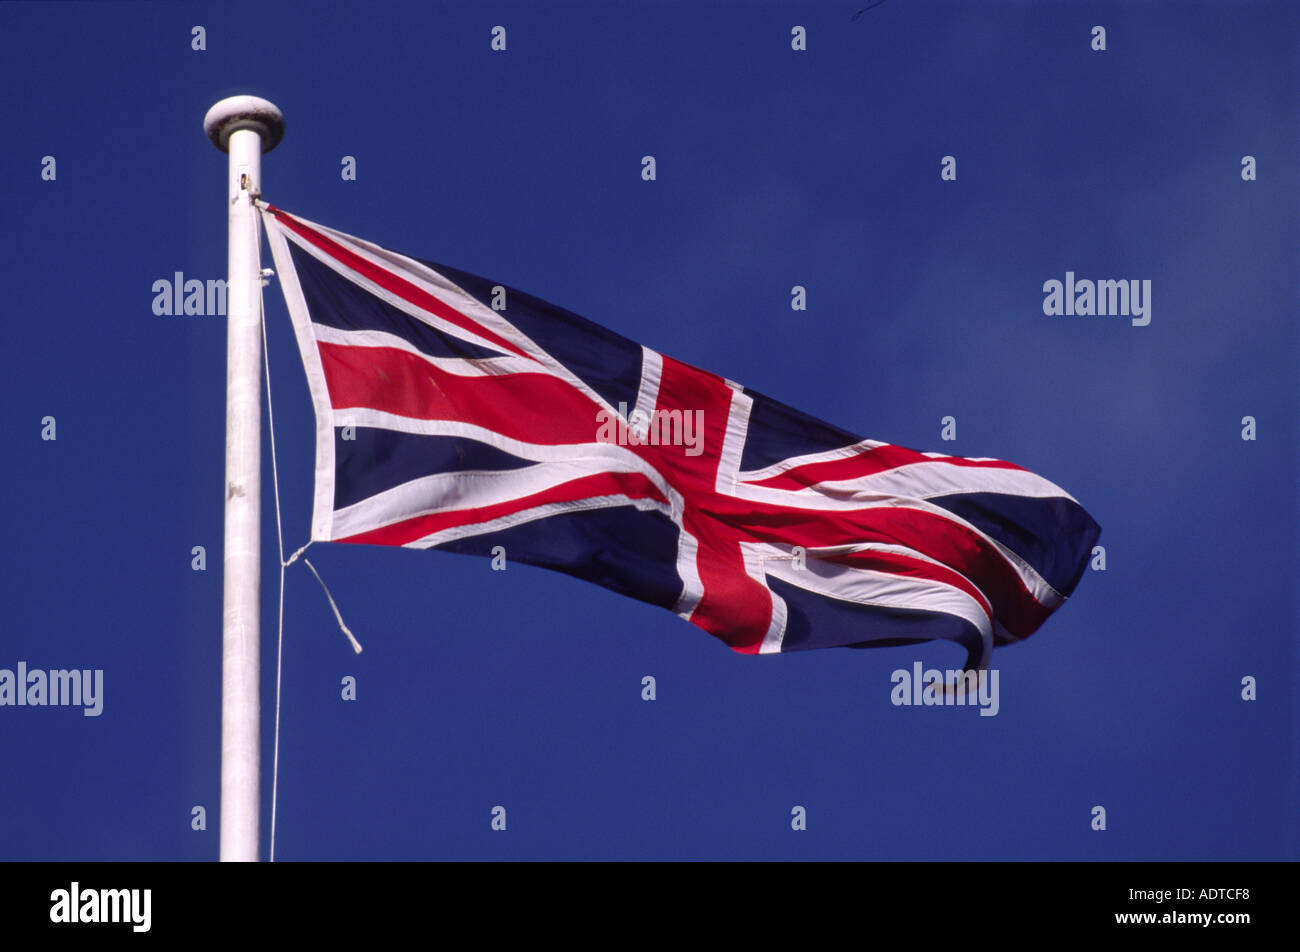 Fotos gratis : cielo, viento, línea, mástil, bandera, azul, ondulación,  desgastado, Bandera de los estados unidos, Banderas de navegación 4608x2592  - - 661881 - Imagenes gratis - PxHere